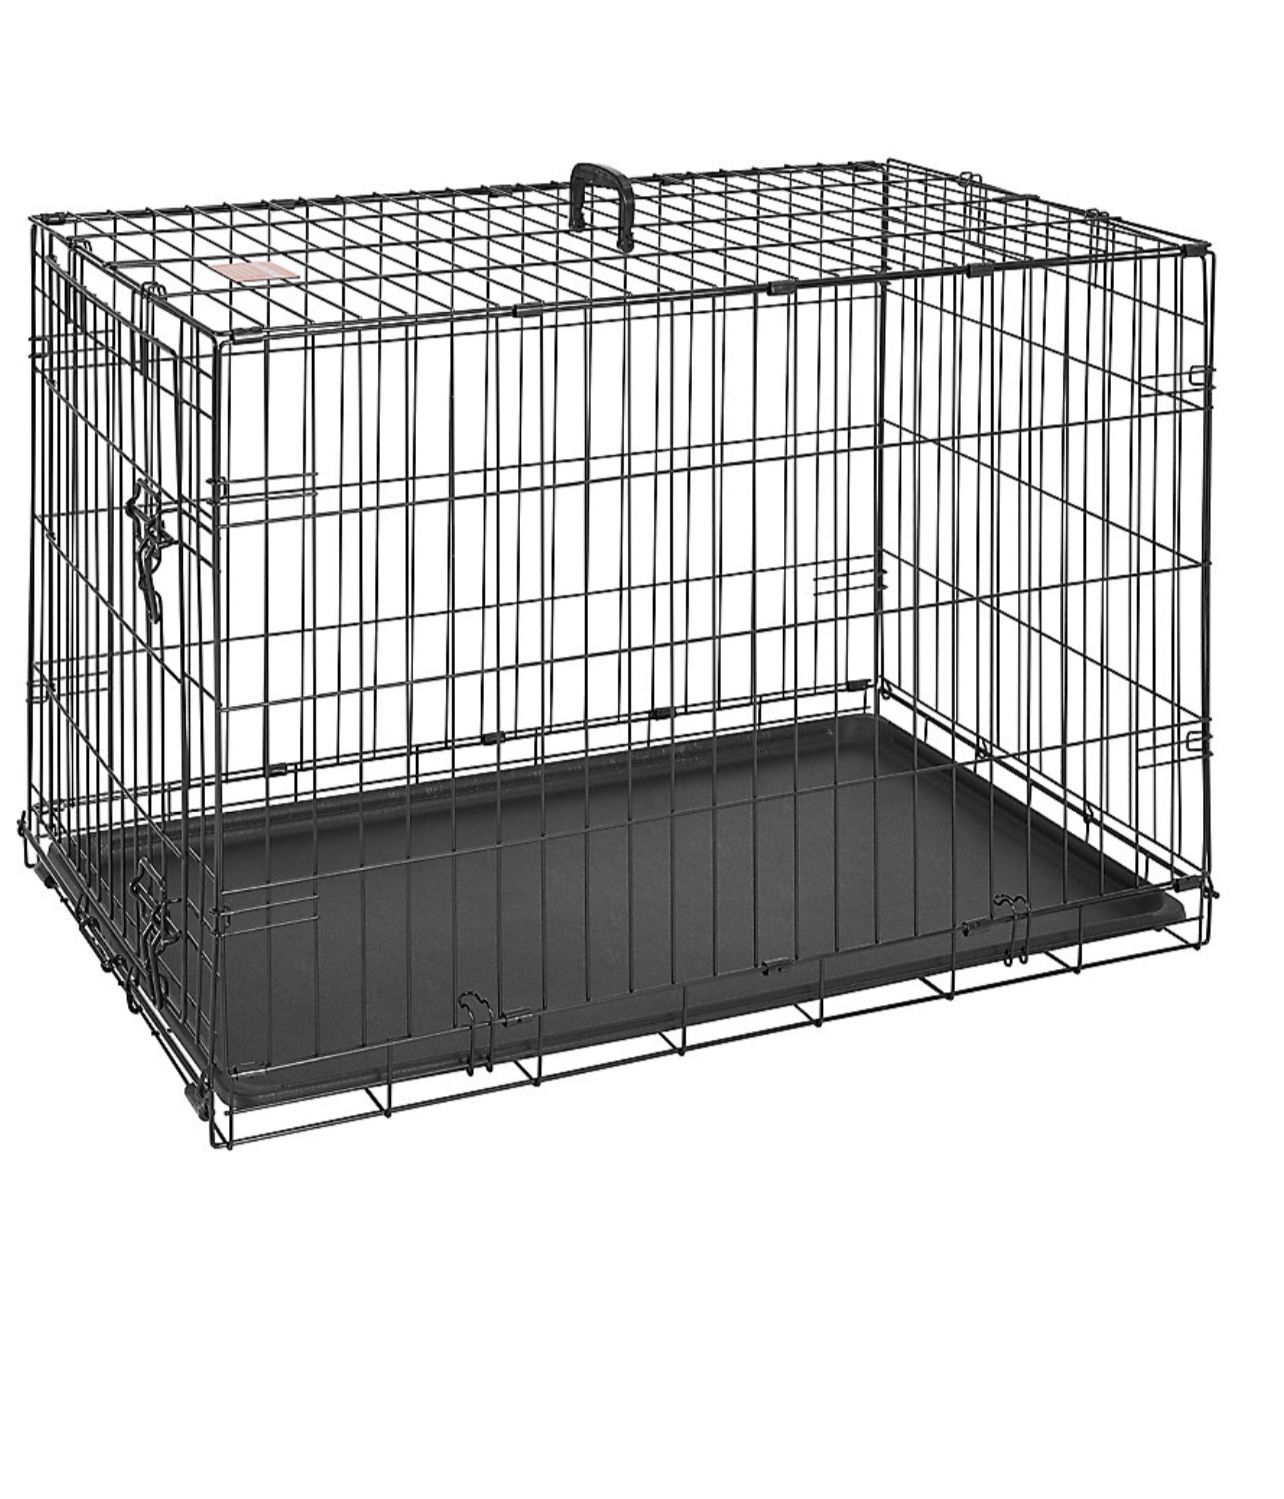 Dog crate 37.01 in L x 22.64 in W x 24.80 in H